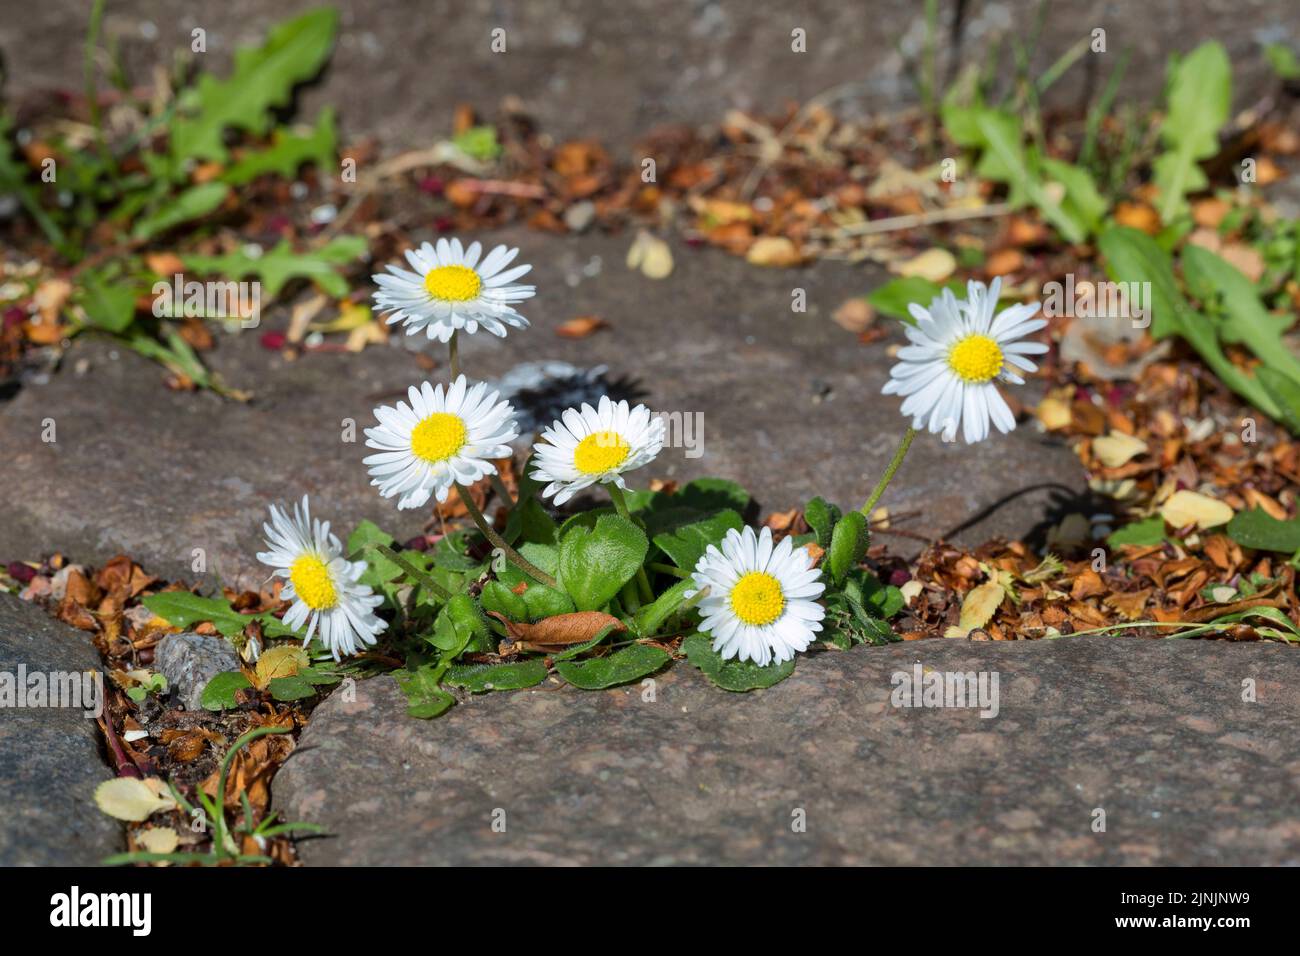 Pâquerette commune, pâquerette de pelouse, pâquerette anglaise (Bellis perennis), croissance dans les trous de pavage, Allemagne Banque D'Images